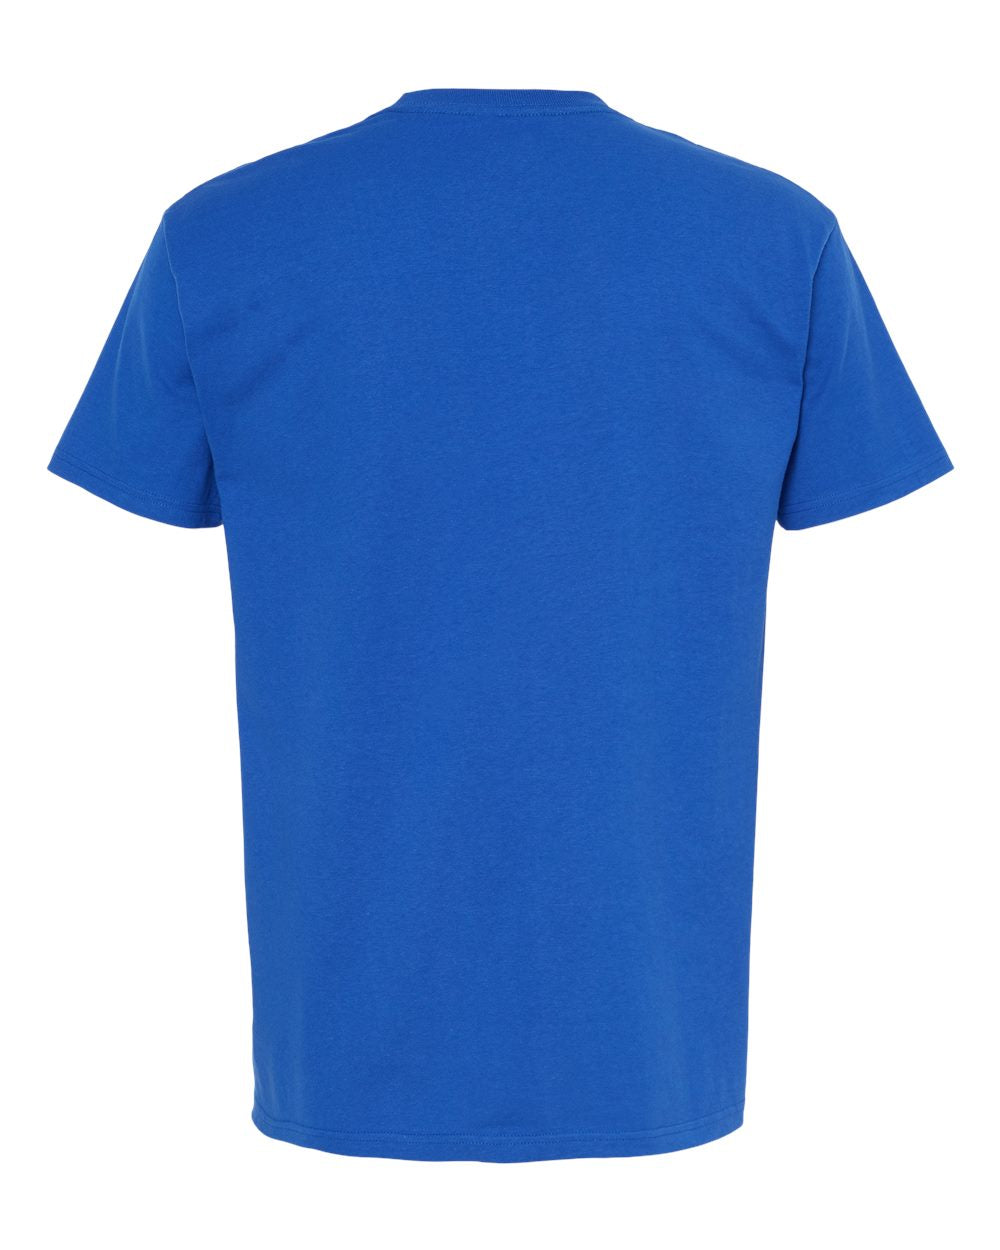 M&O Ring-Spun T-Shirt 5500 #color_Royal